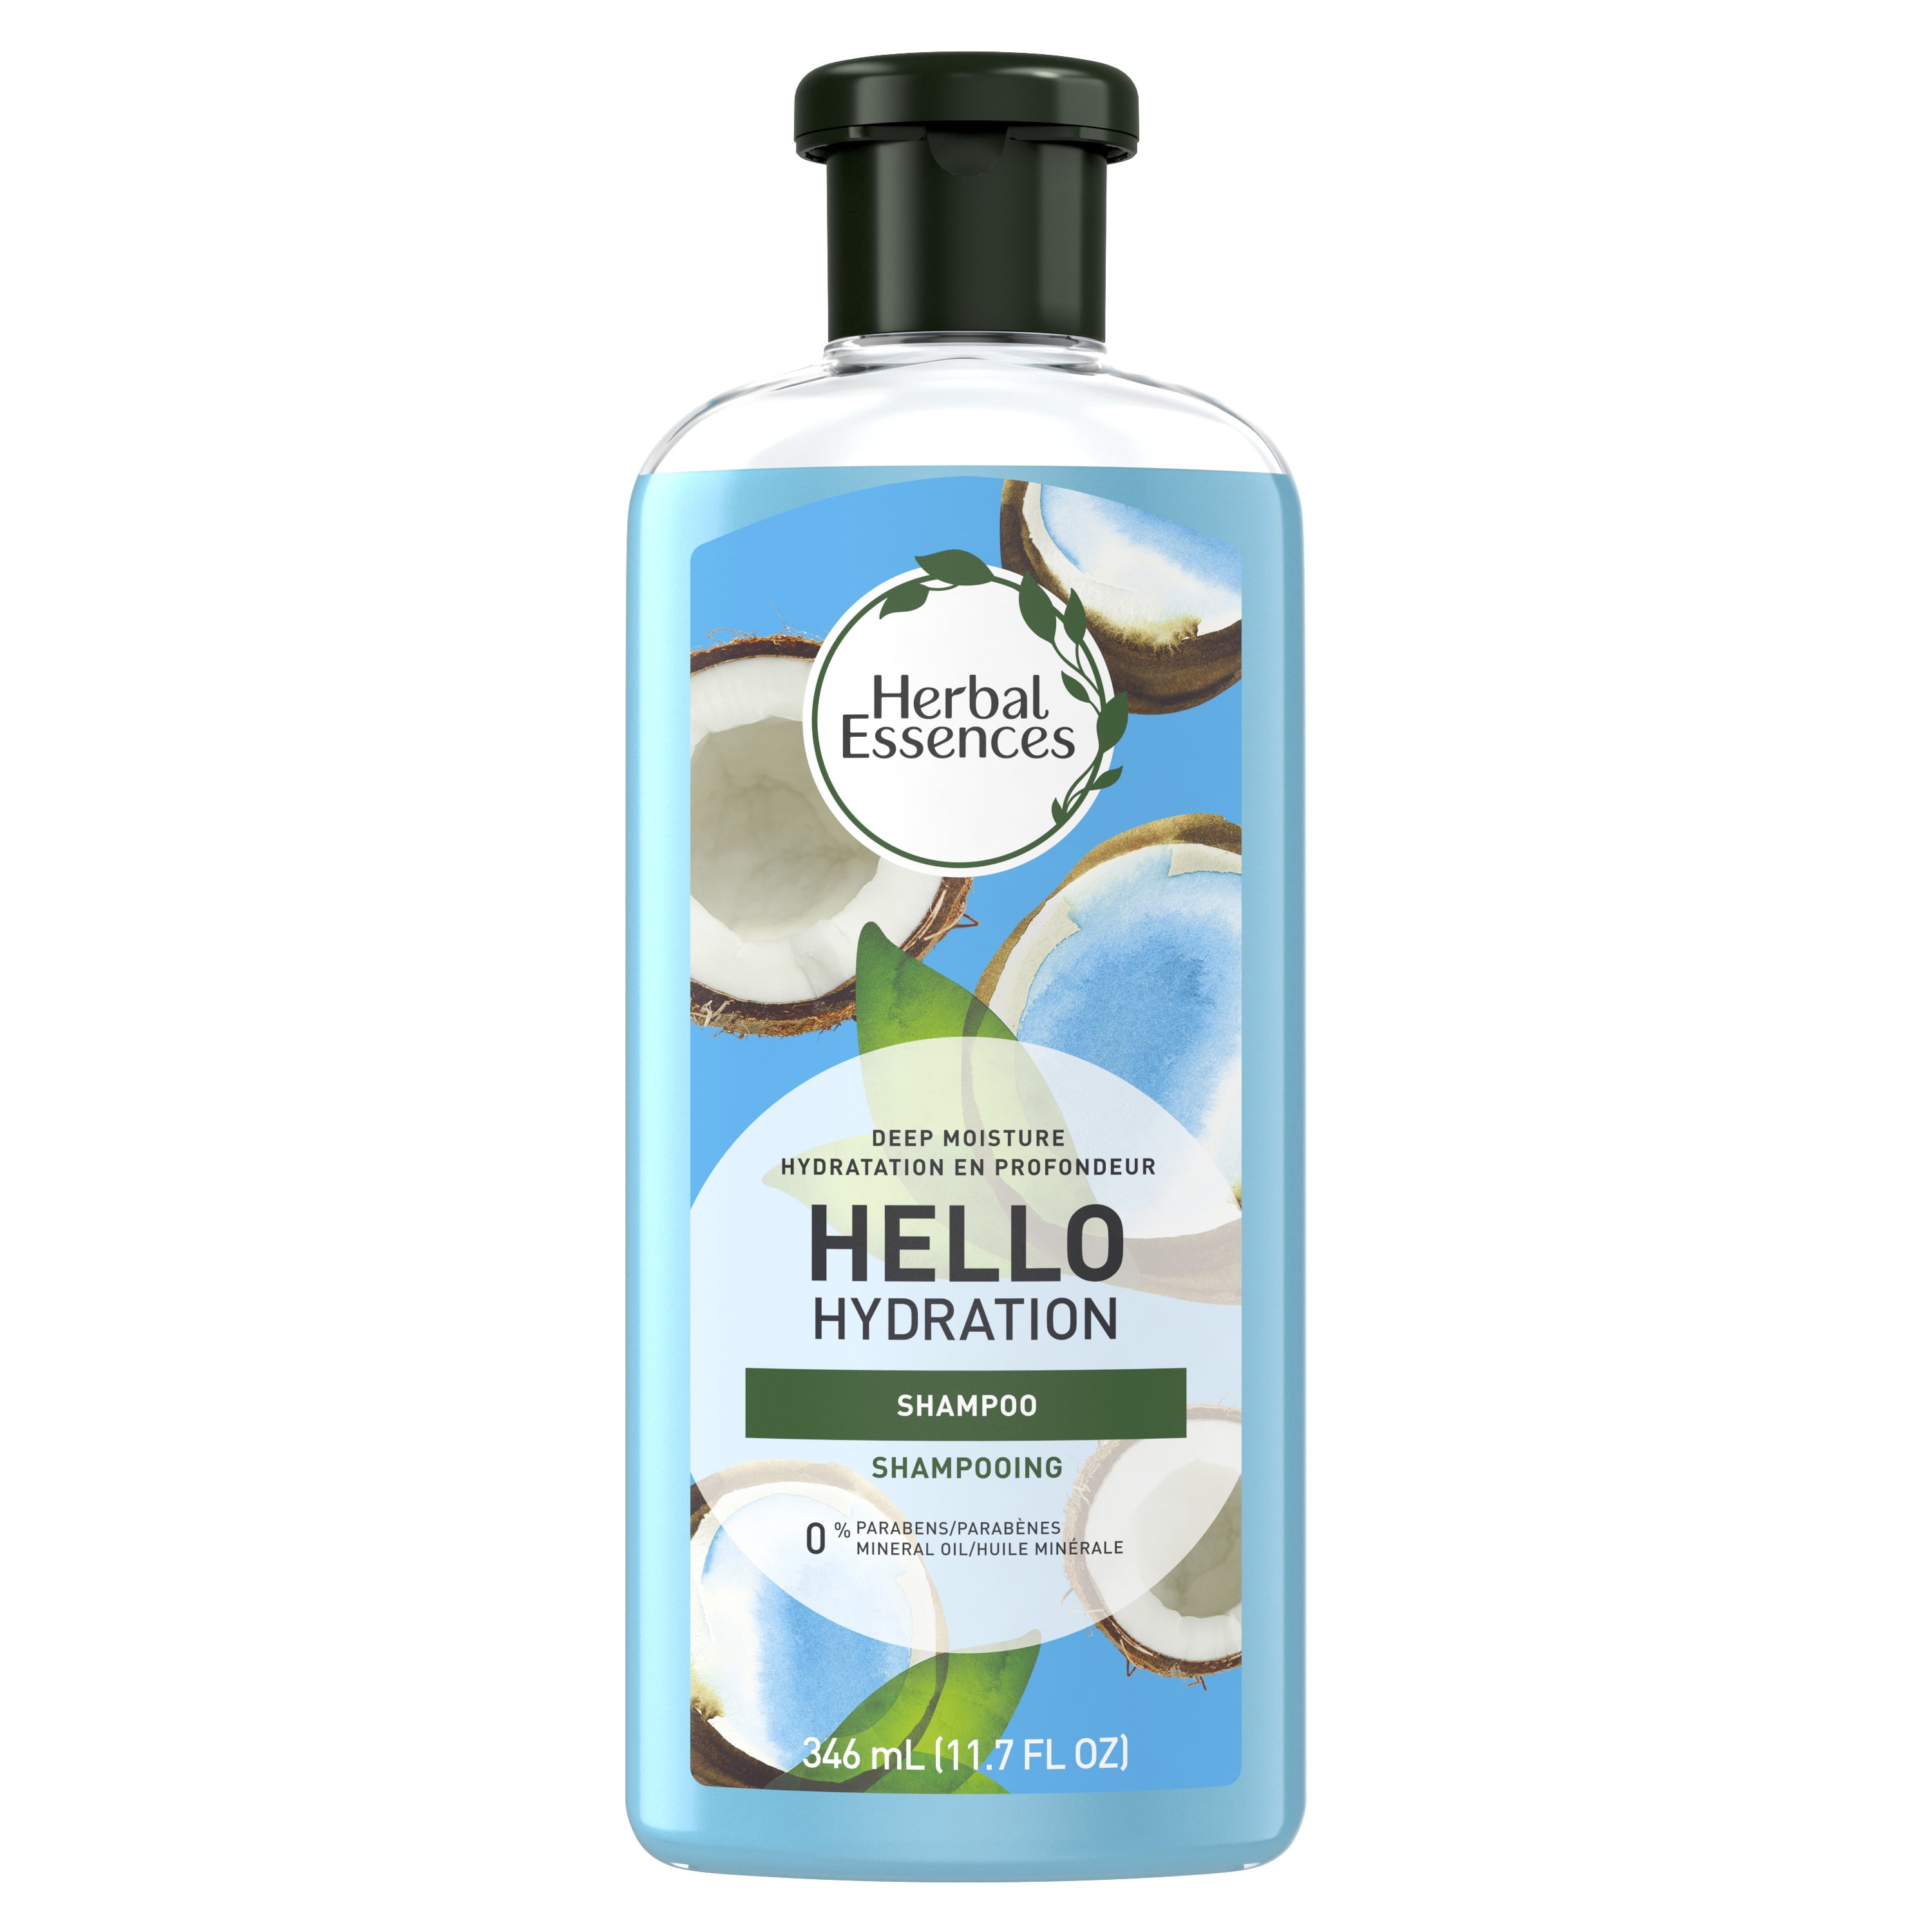 Herbal Essences Hello Hydration Shampoo and Body Wash, 11.7 fl oz